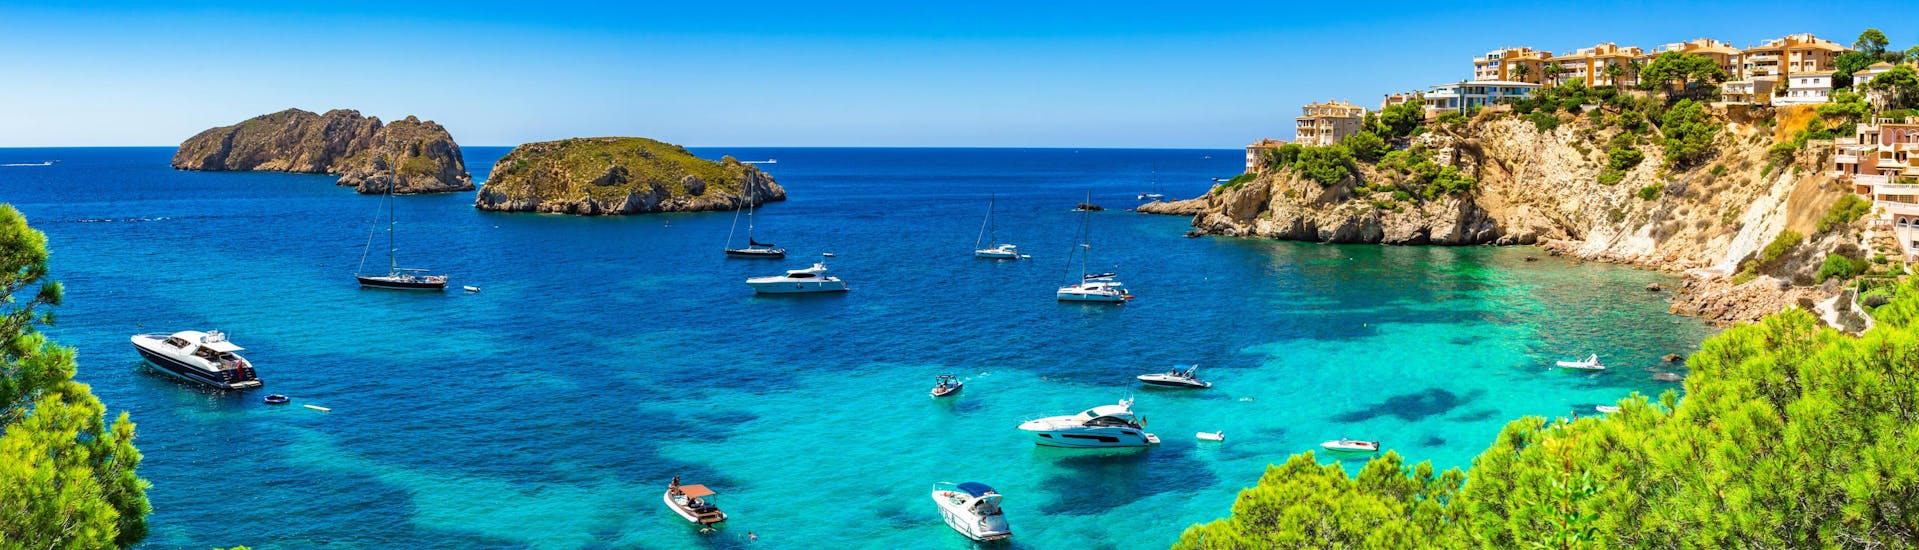 Vue sur la côte de Santa Ponsa et les îles Malgrats, que vous pouvez découvrir lors d'une balade en bateau.